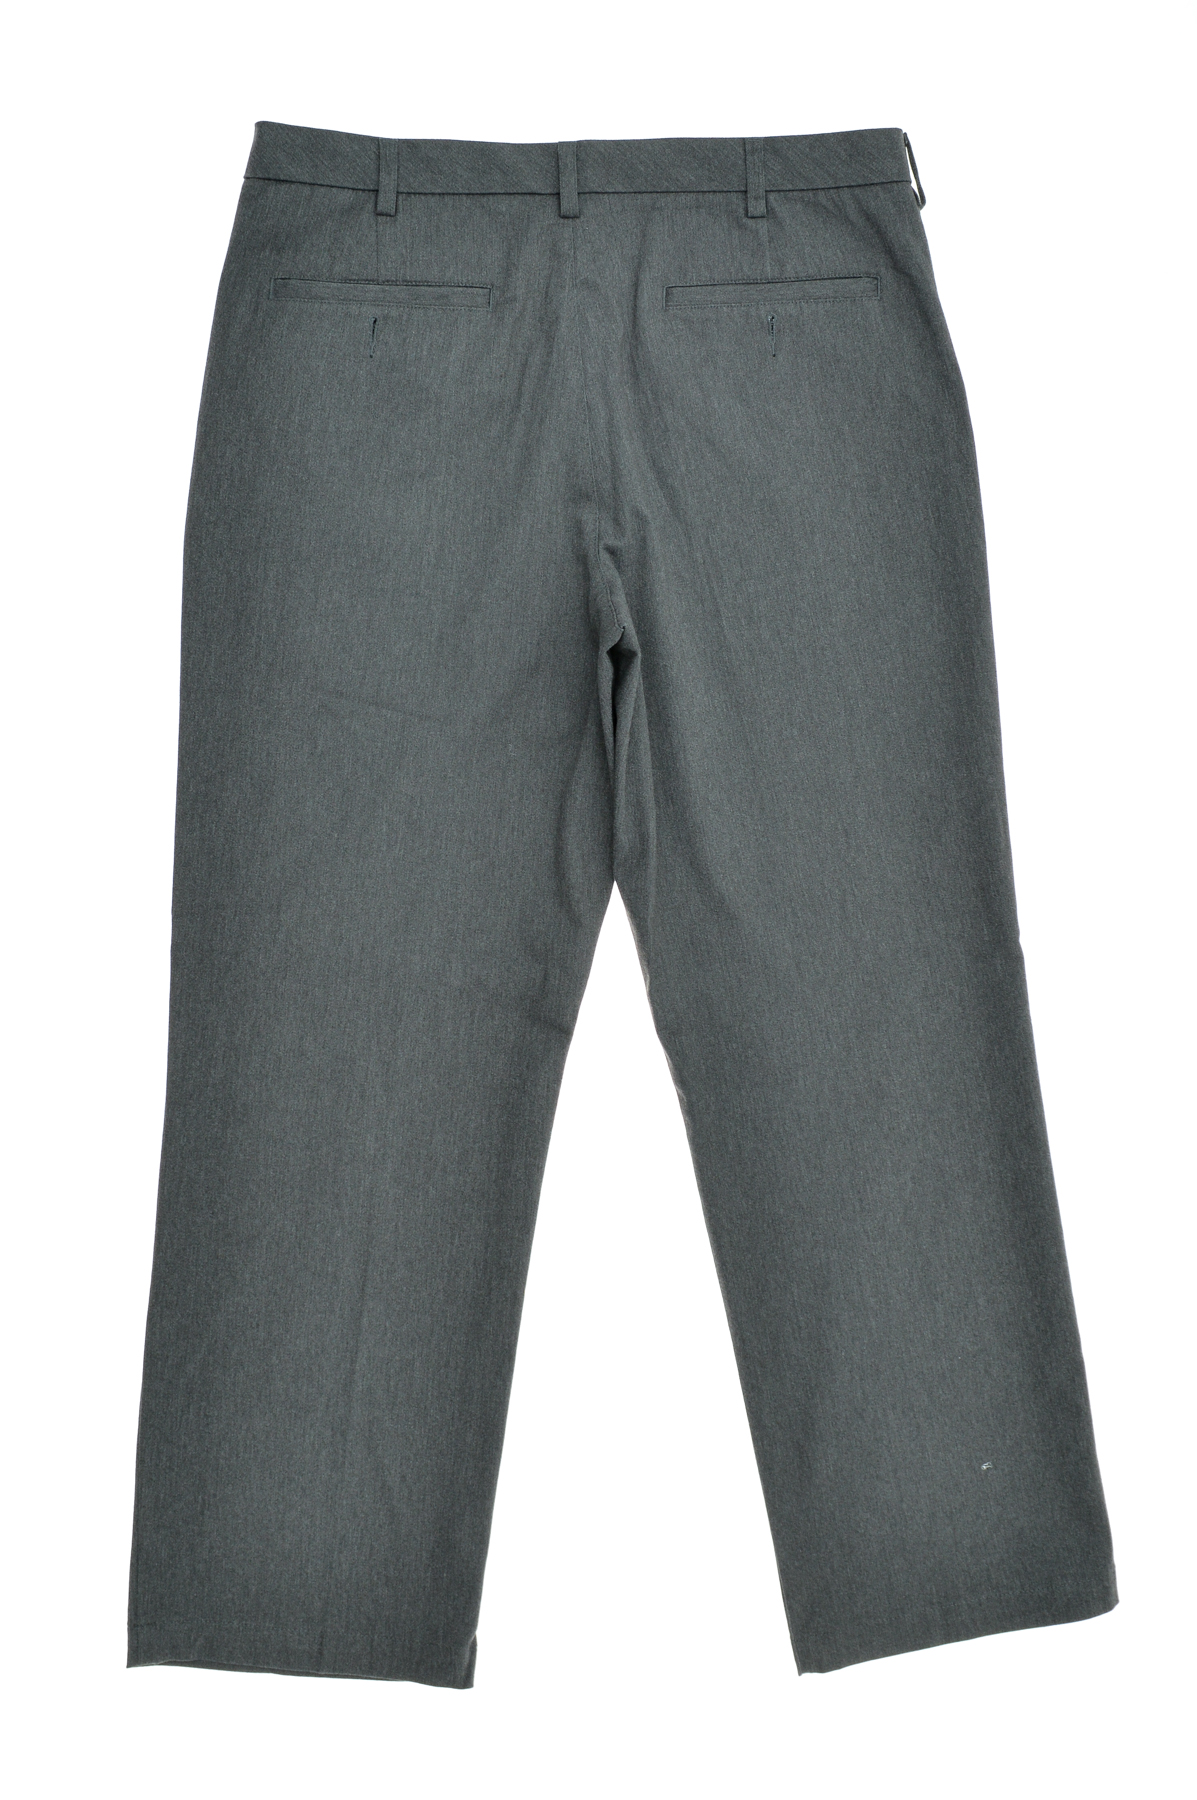 Pantalon pentru bărbați - Croft & Barrow - 1